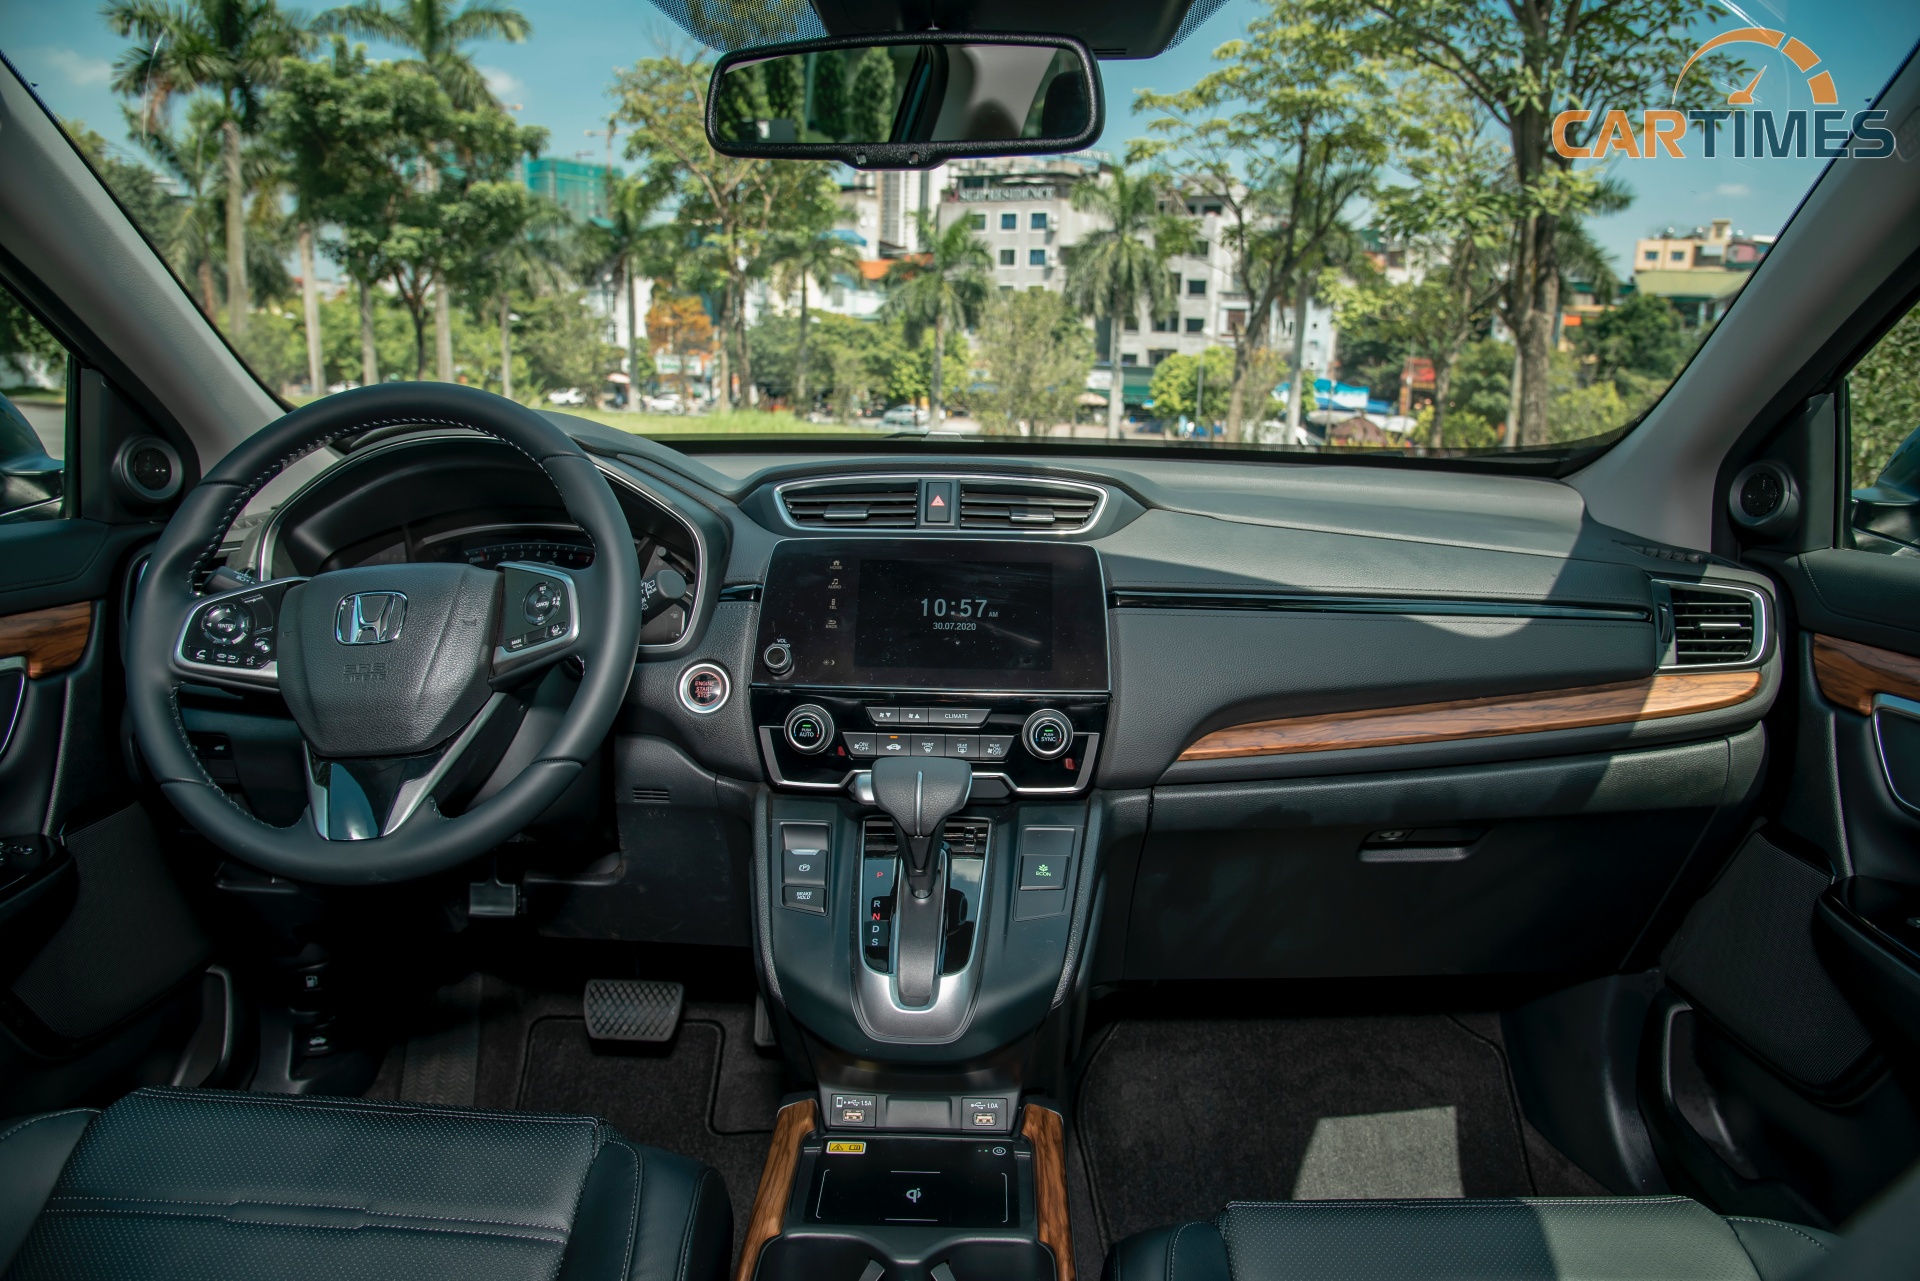 Tặng “100% TRƯỚC BẠ” cho khách hàng đặt xe Honda CR-V từ 05/07/2021 và làm thủ tục thanh toán nhận xe đến 31/07/2021. Liên hệ Honda Ô tô Khánh Hòa - Nha Trang - 0905 254 255